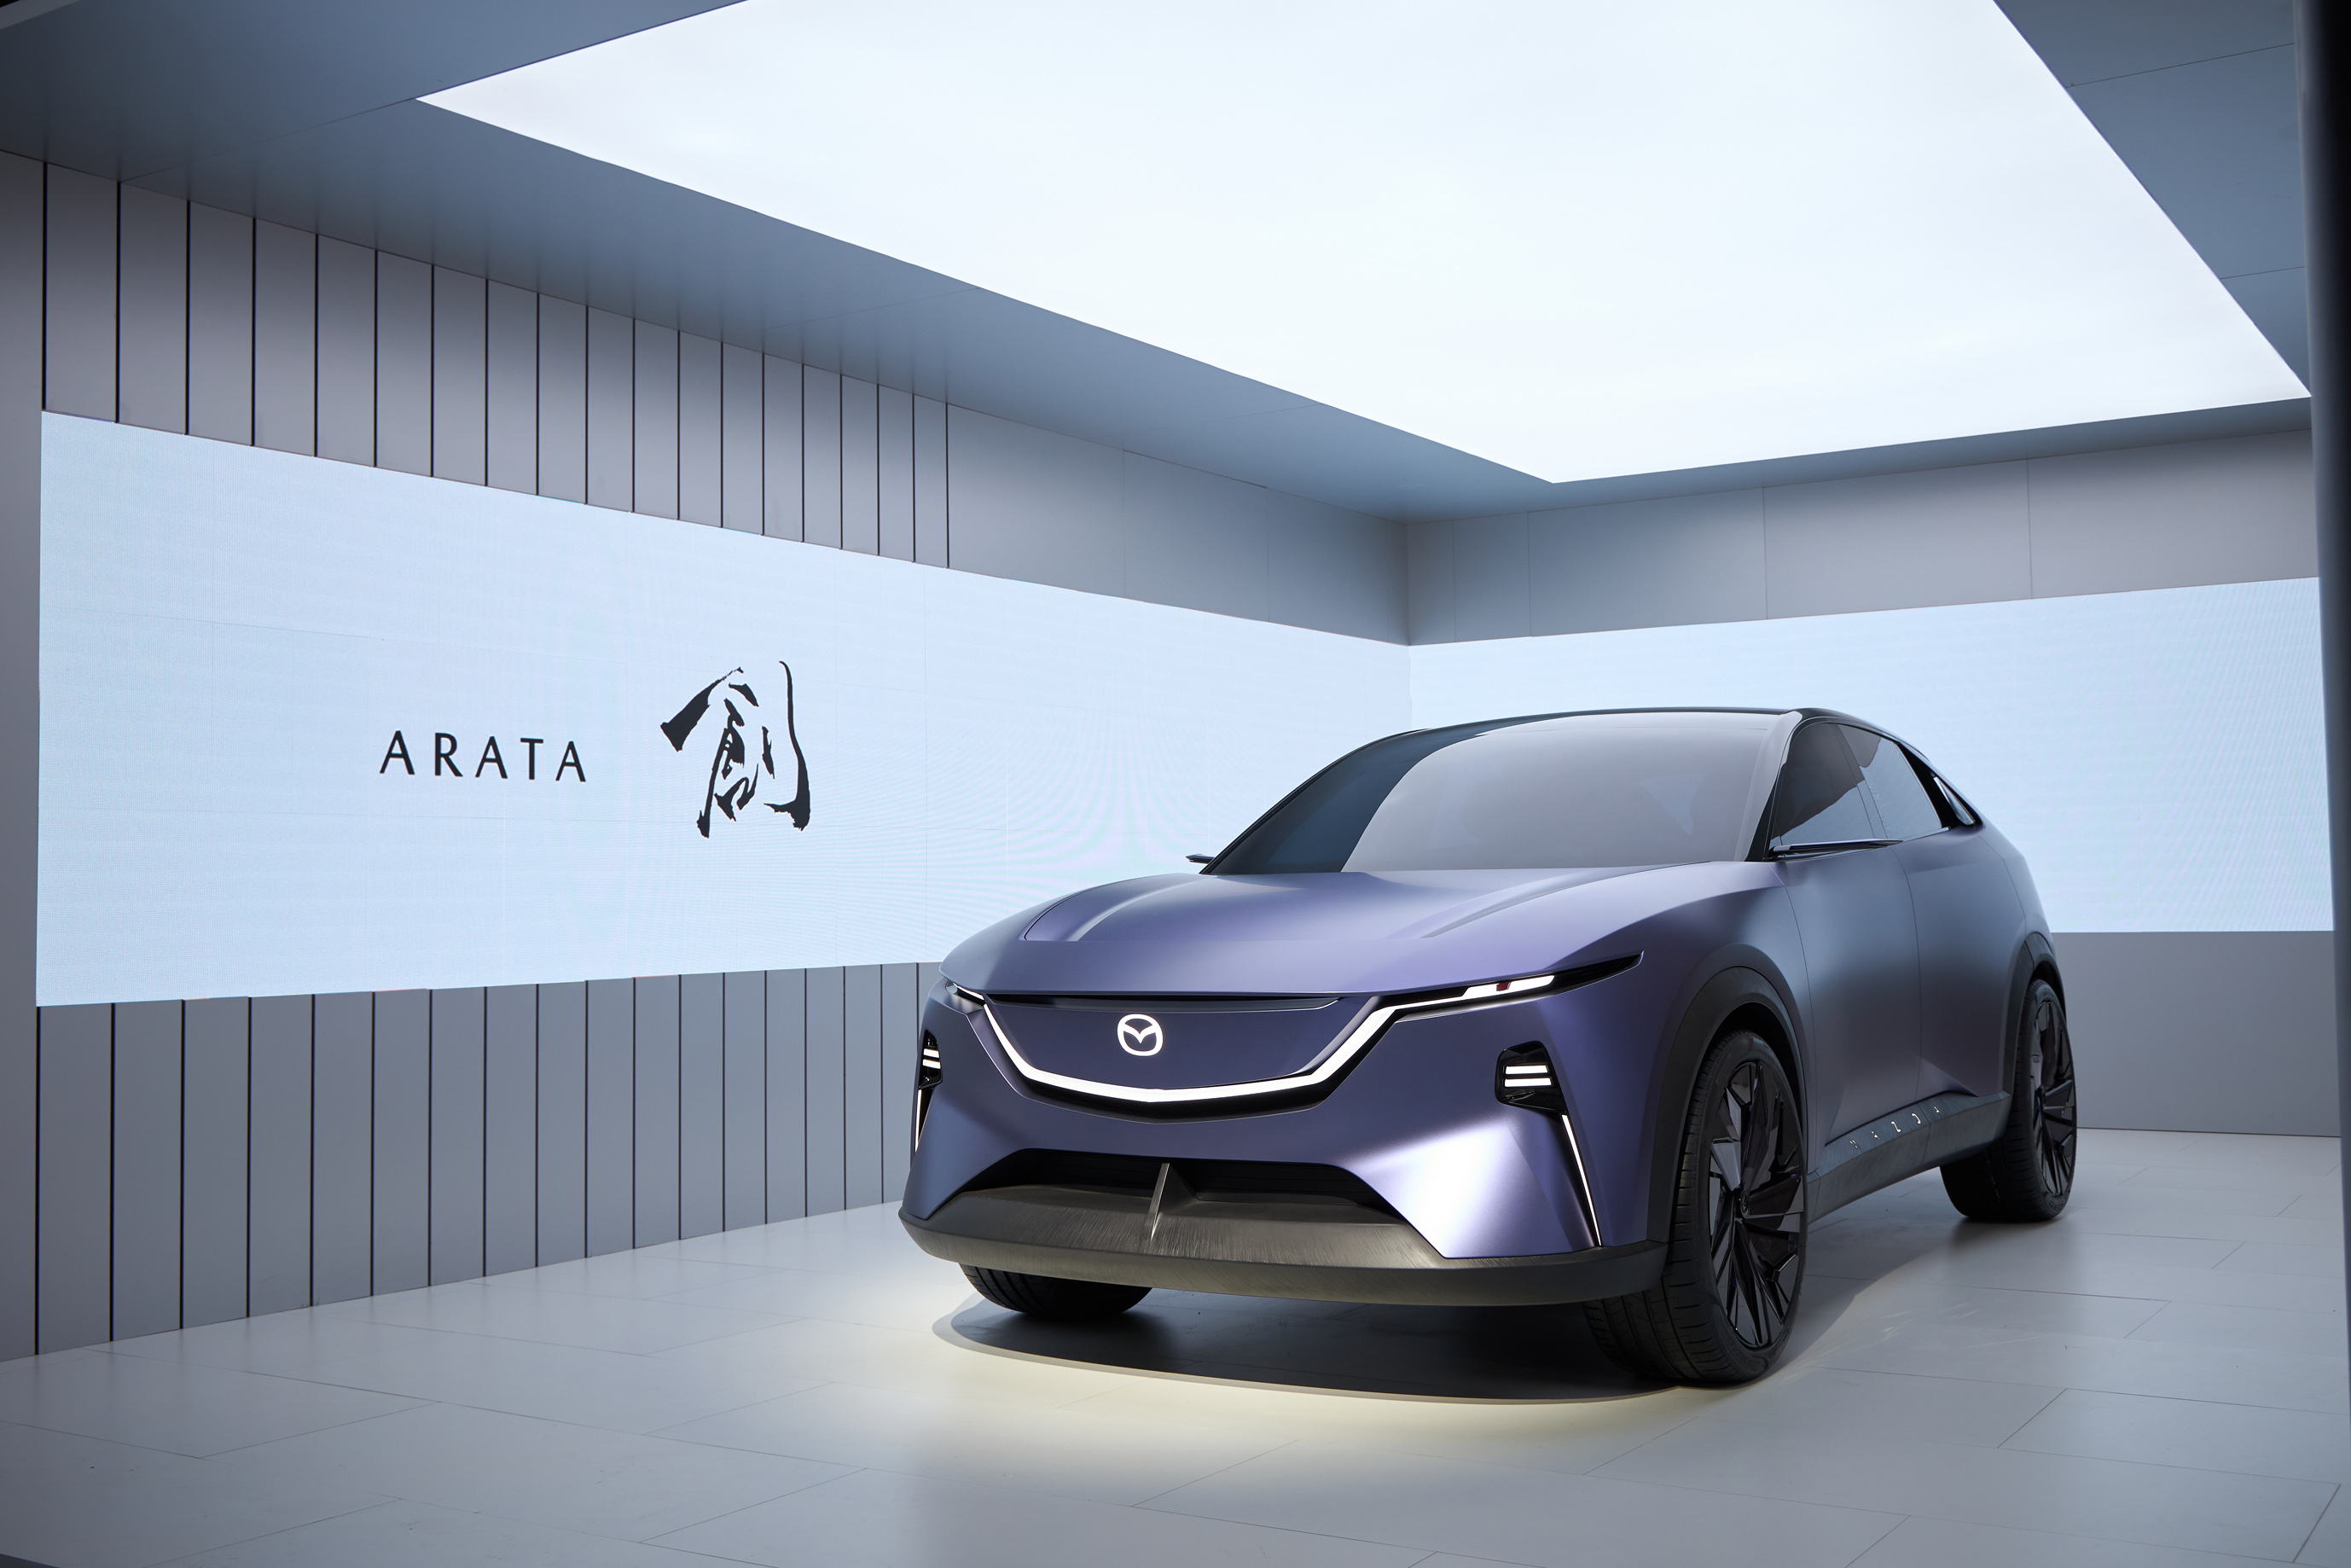 mazda 2023 財報會上公布相關新車資訊，次世代 cx-5 將採專用 hybrid 動力、2027 推出專用 bev 平台車